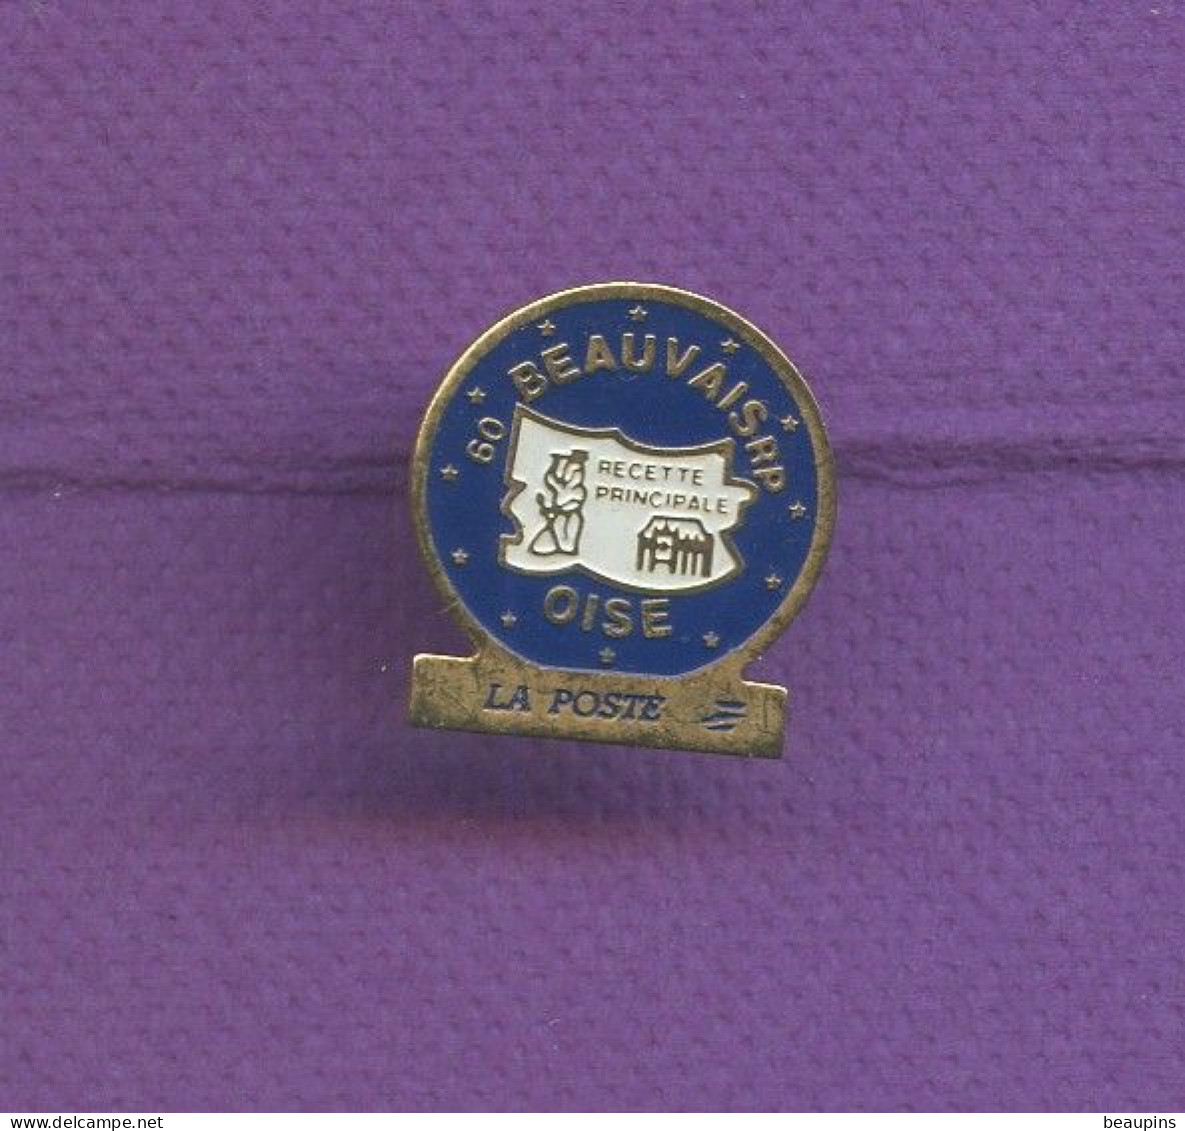 Rare Pins La Poste Beauvais Oise N879 - Mail Services